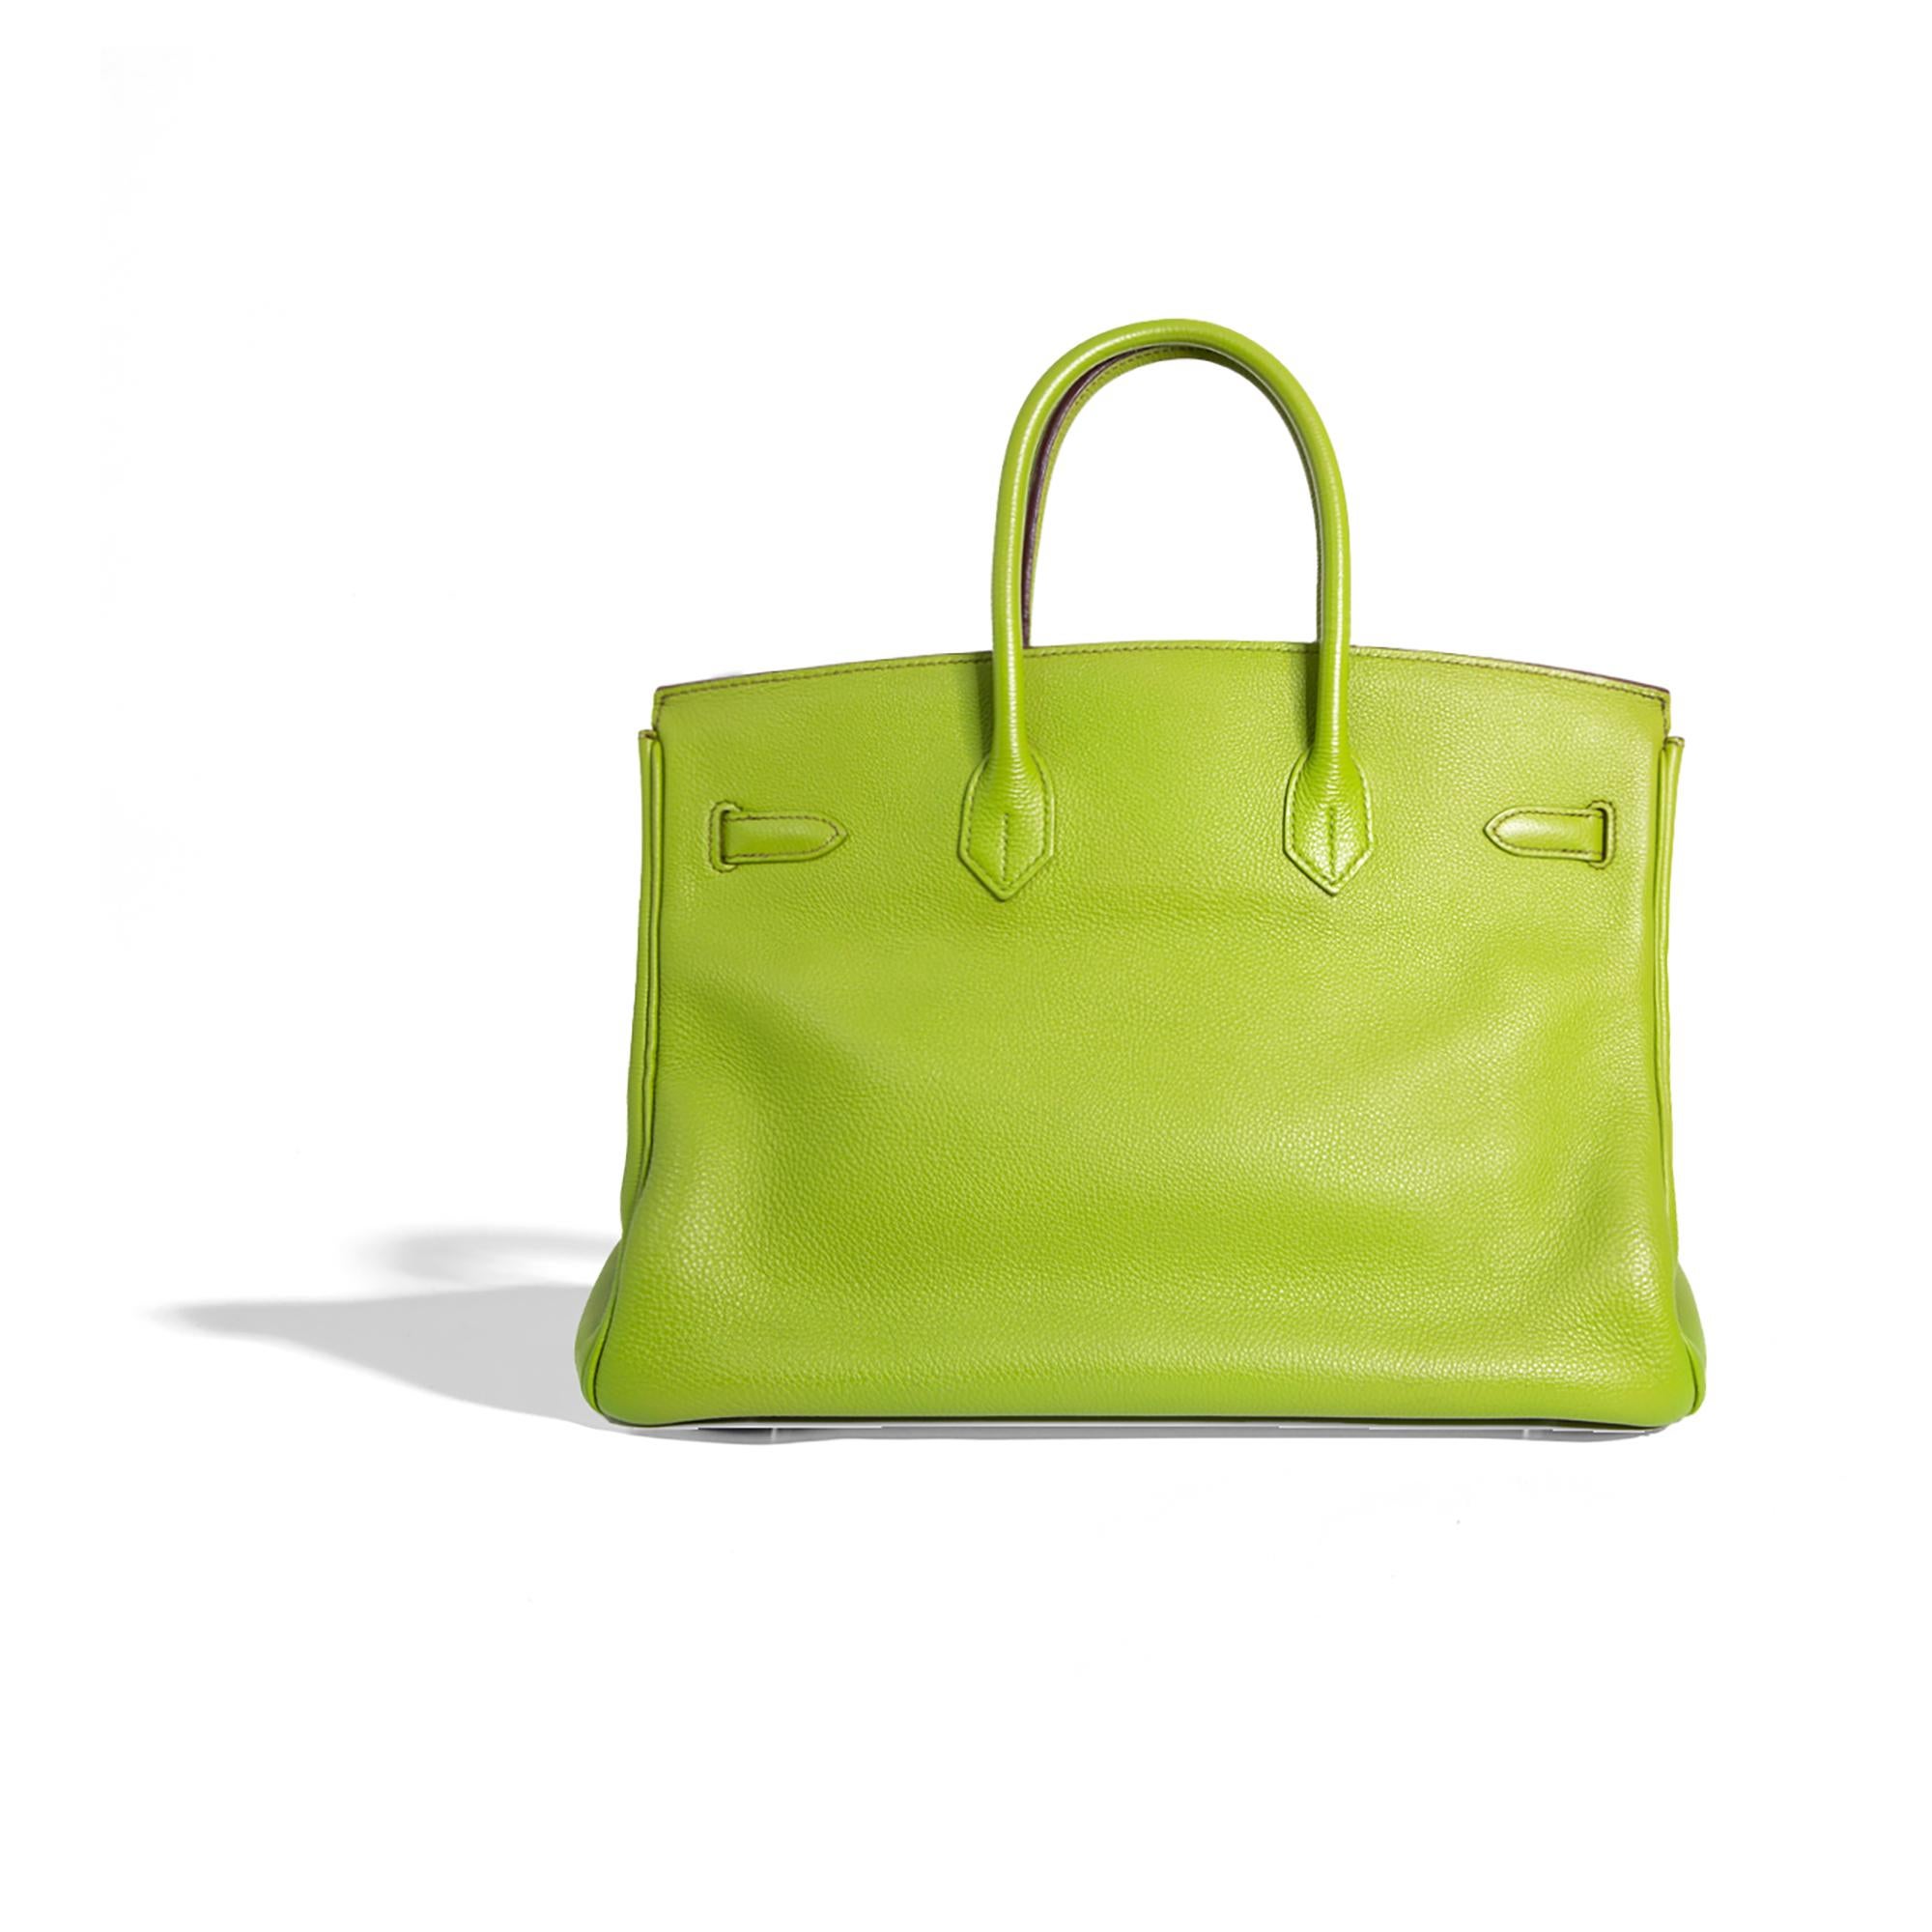 Ce Birkin togolais vert de 35 cm avec PHW est d'un luxe et d'un style incomparables. Fabriqué en 2007 avec du cuir togo vert anis vibrant, cet objet de collection est doté d'accessoires en palladium pour une finition subtilement sophistiquée. Un